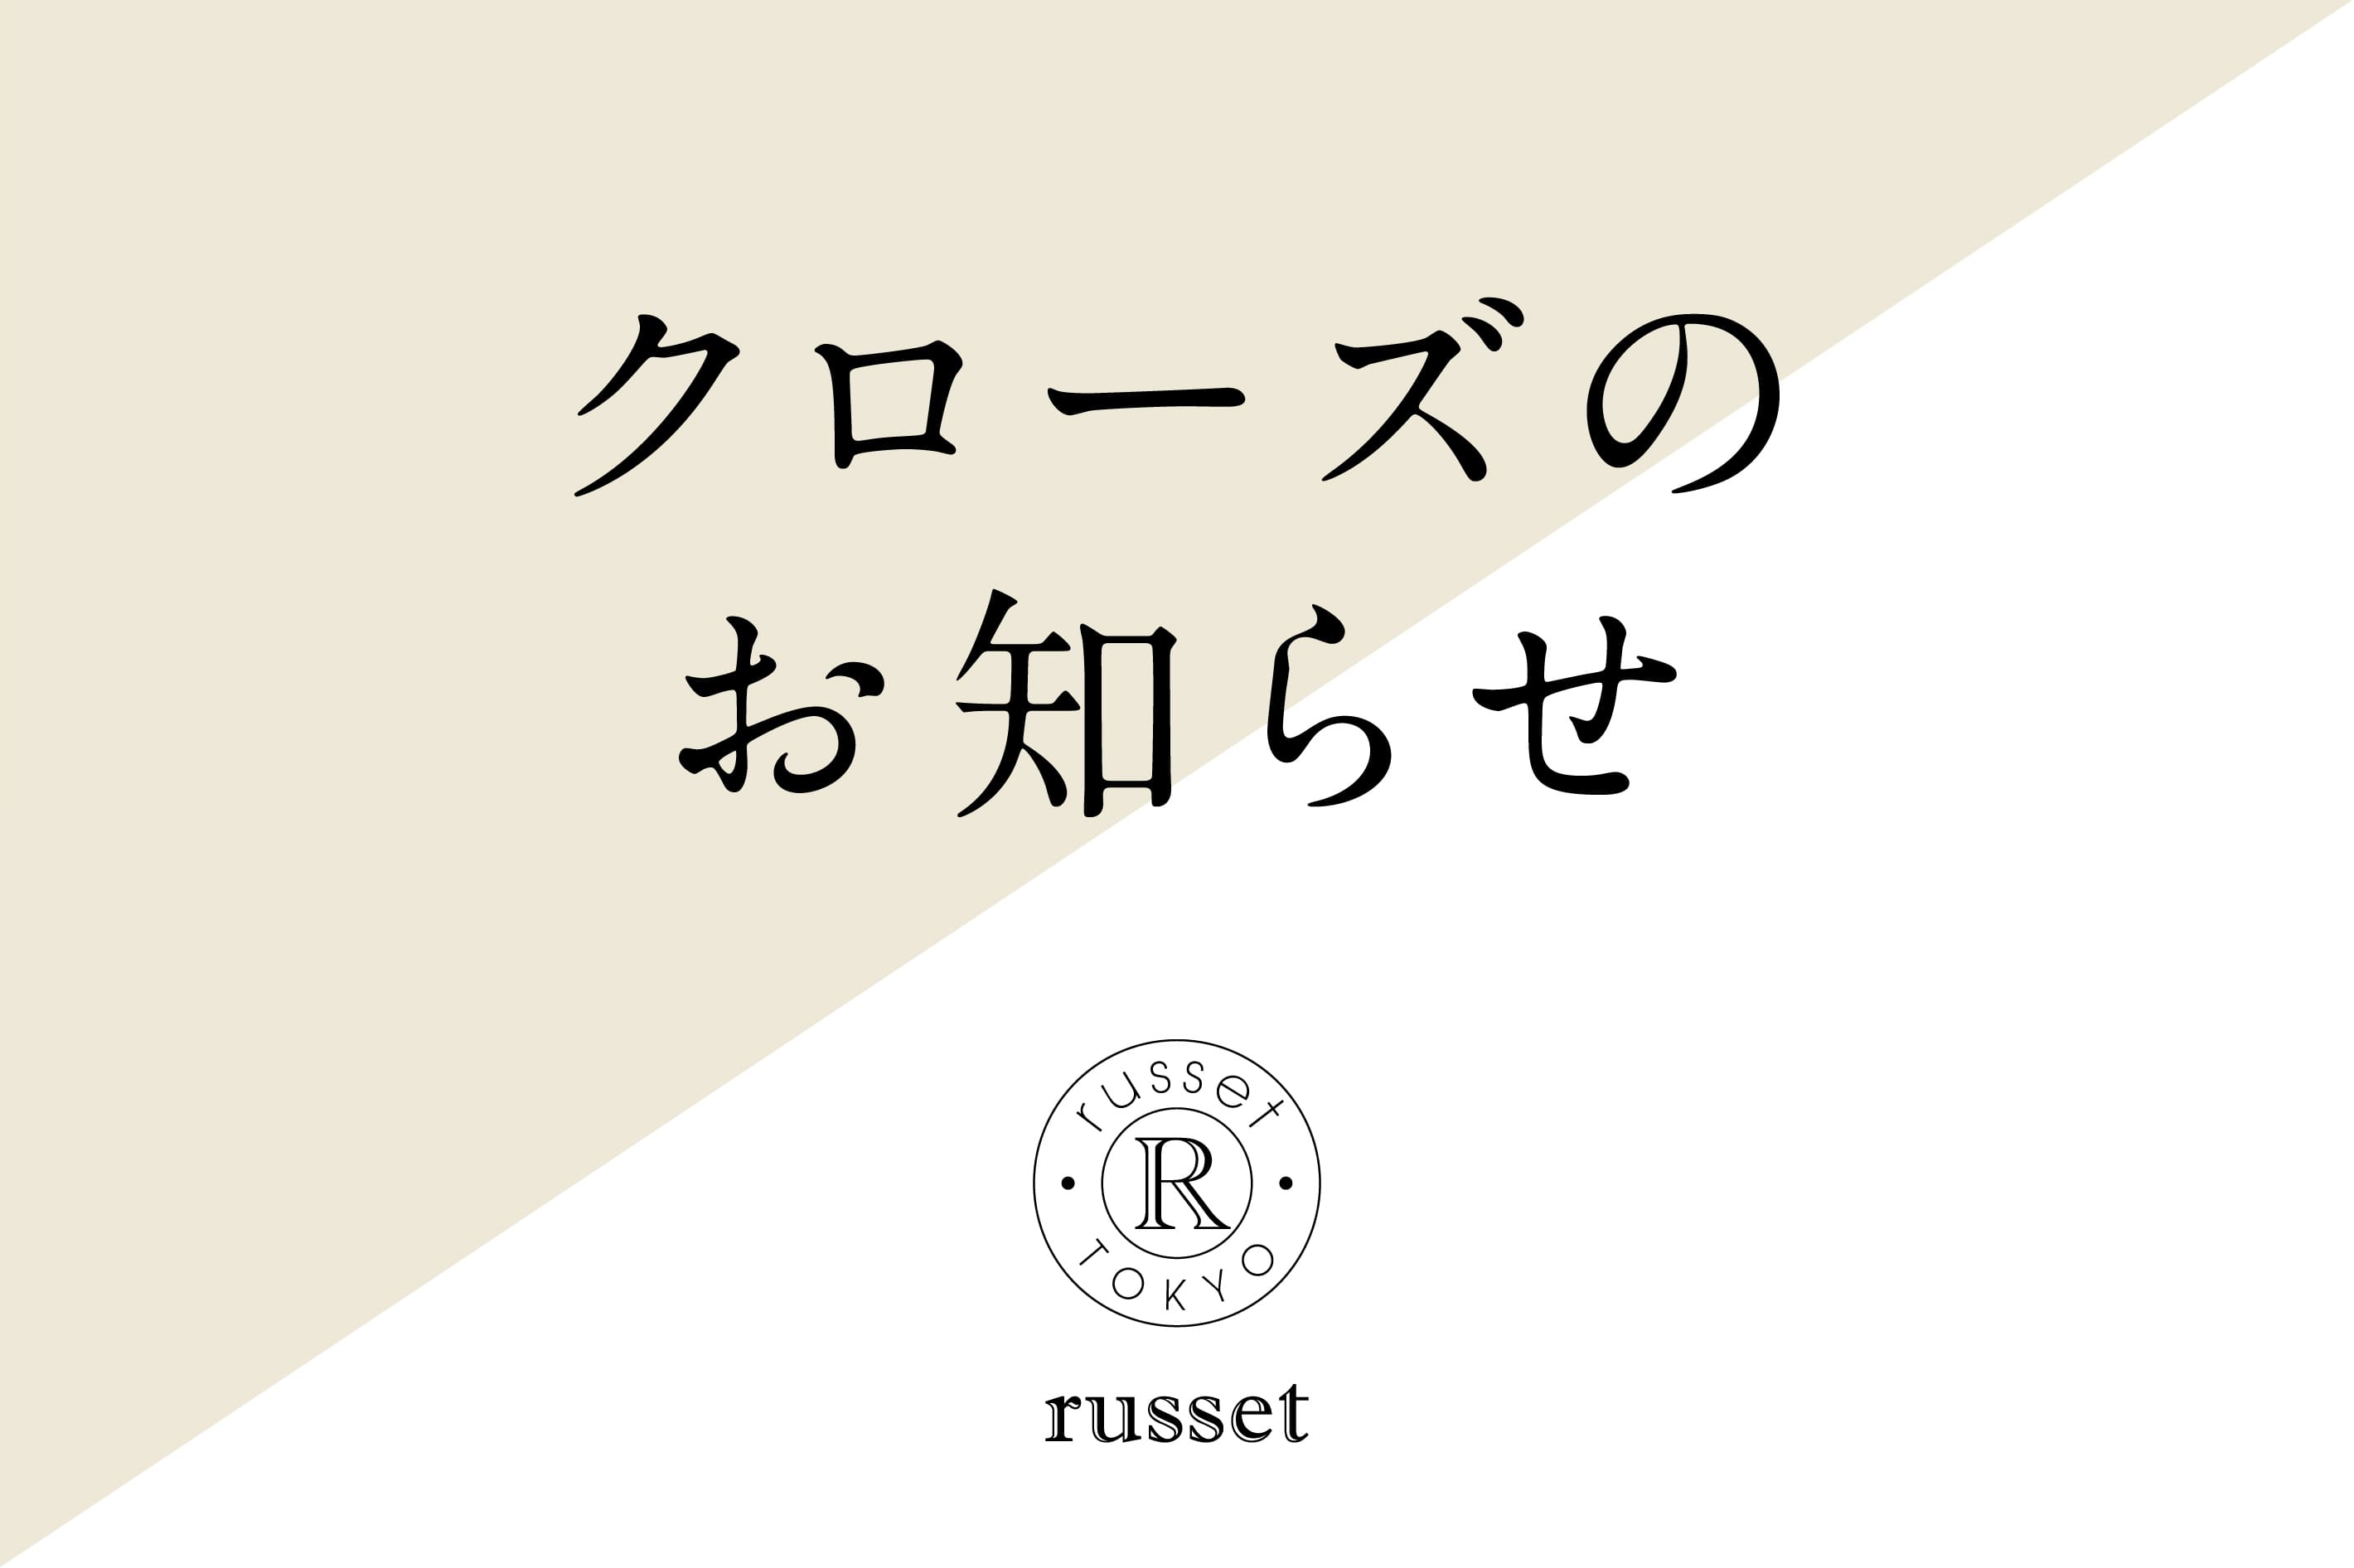 russet 京王聖蹟桜ヶ丘SC店 閉店のお知らせ